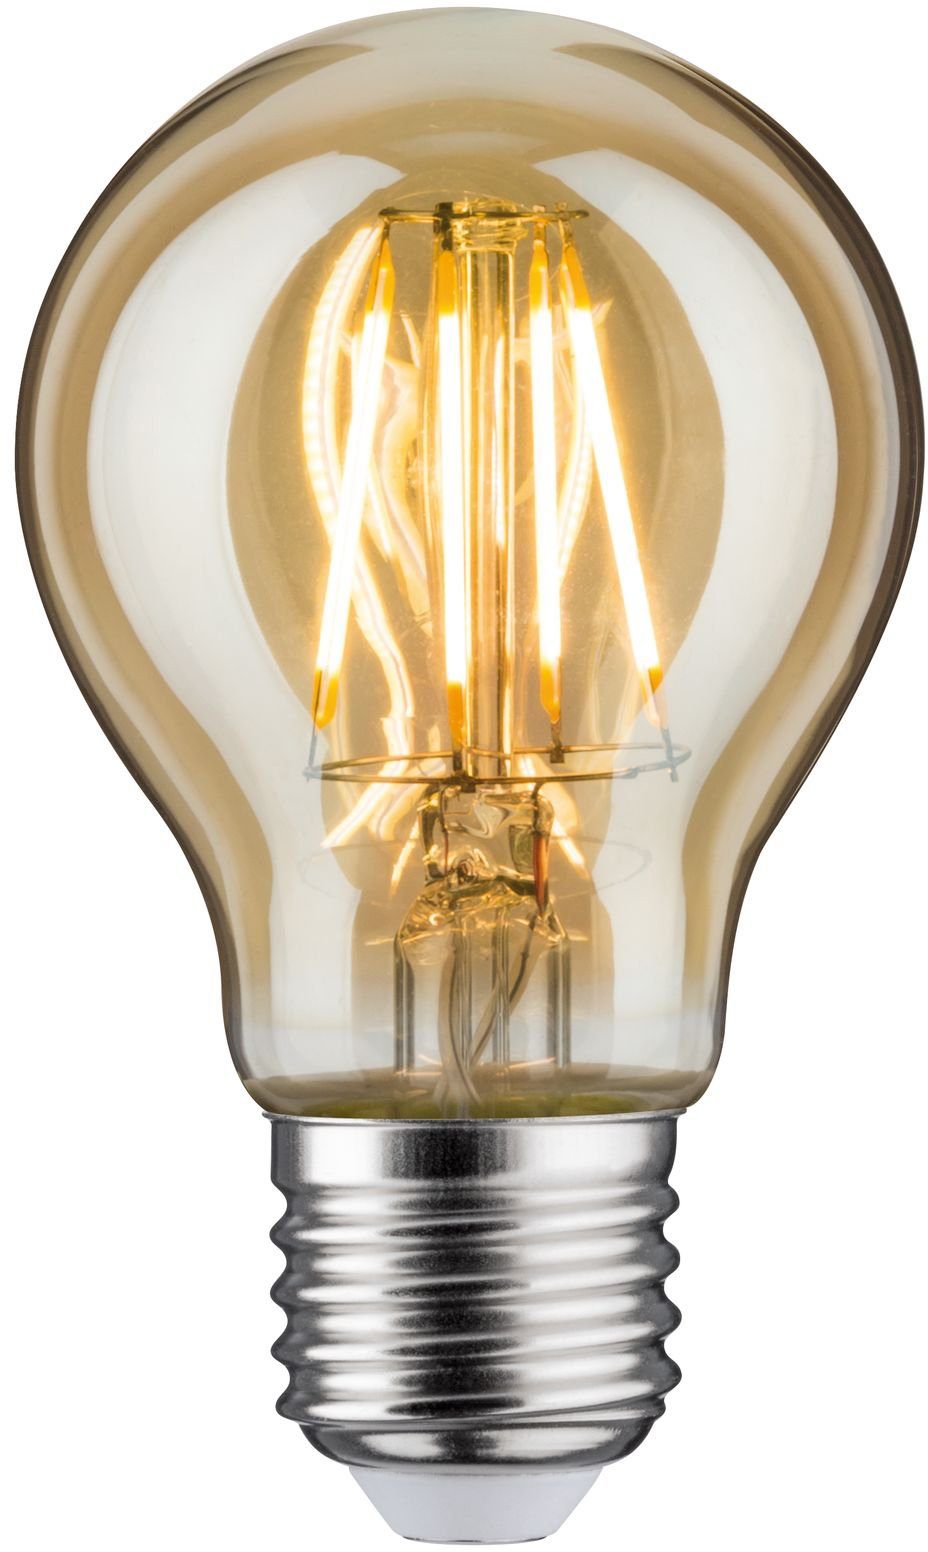 St., 5er-Pack, 5 E27 4,7W E27, 2500K, Goldlicht Paulmann Standardform LED-Leuchtmittel Extra-Warmweiß, LED